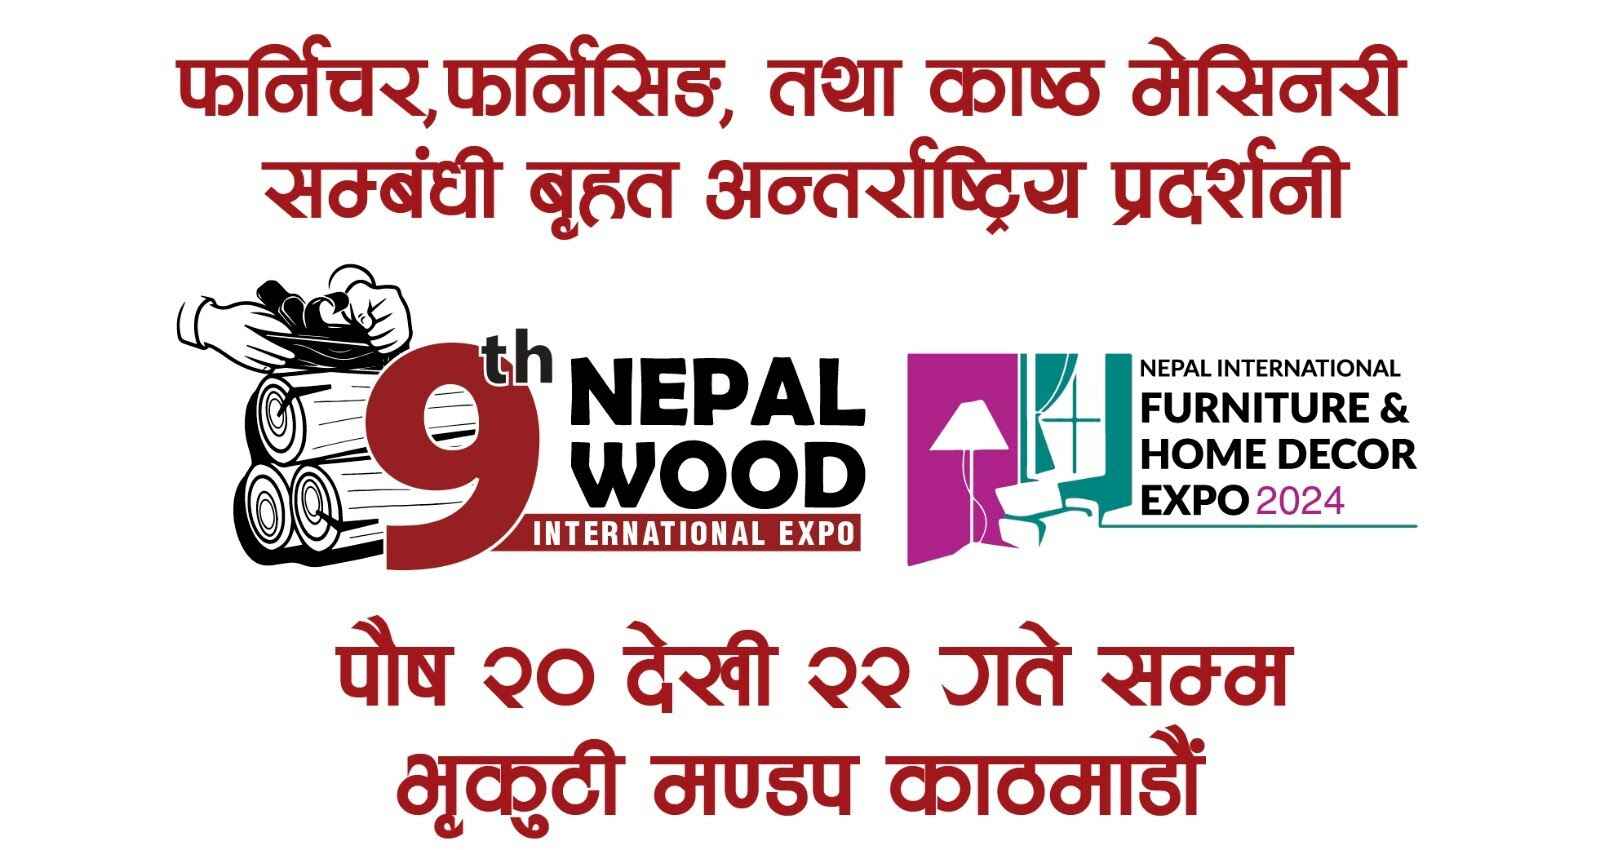 शुक्रबारदेखि नेपाल उड, फर्निचर तथा होम डेकोर अन्तर्राष्ट्रिय प्रदर्शनी